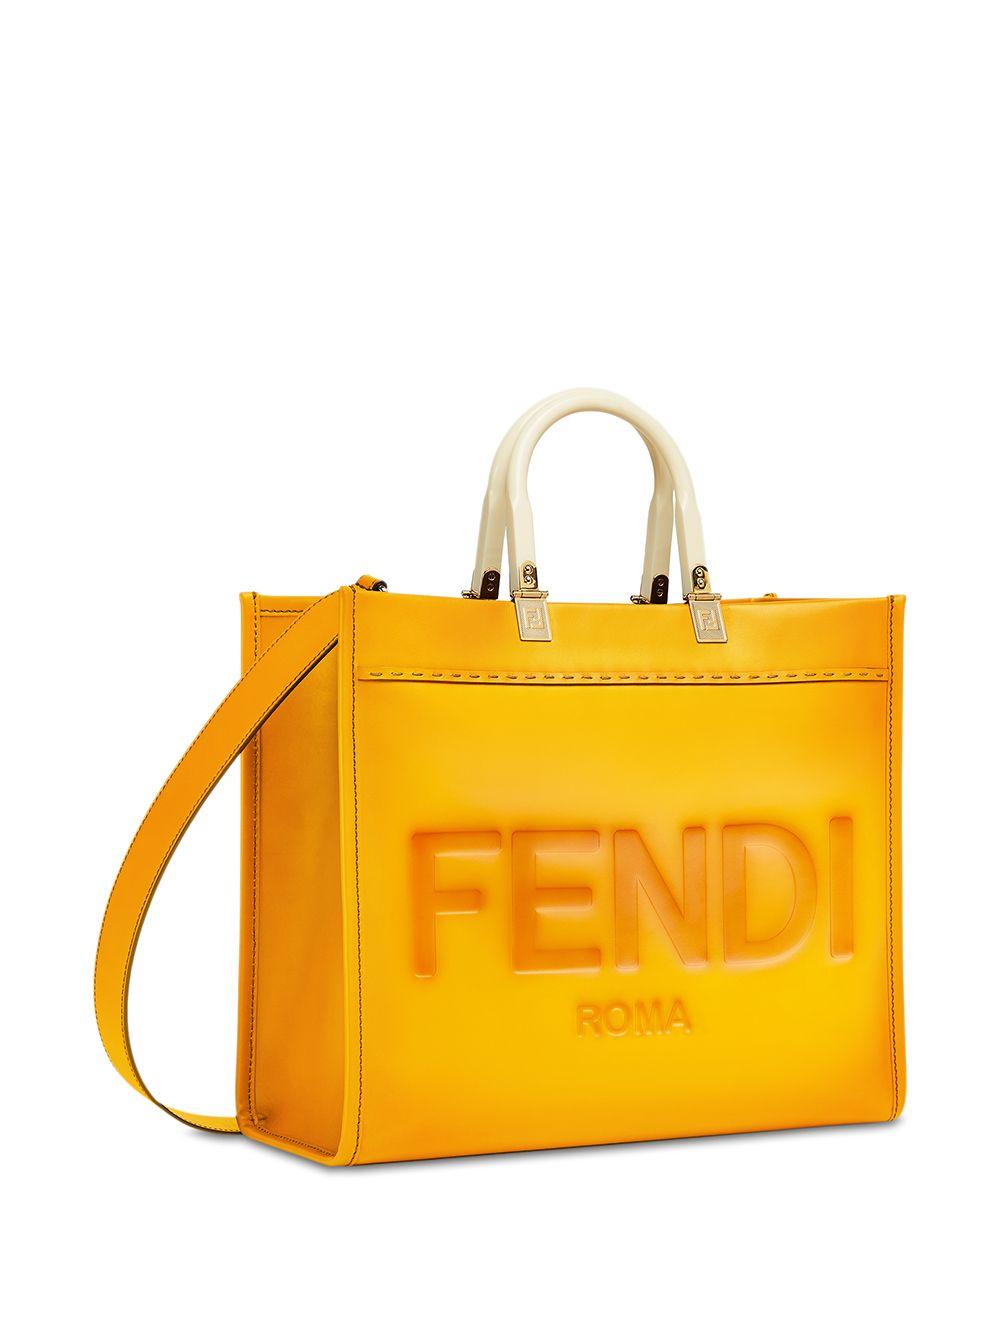 Fendi Medium Sunshine Leather Tote Bag in Orange | Lyst